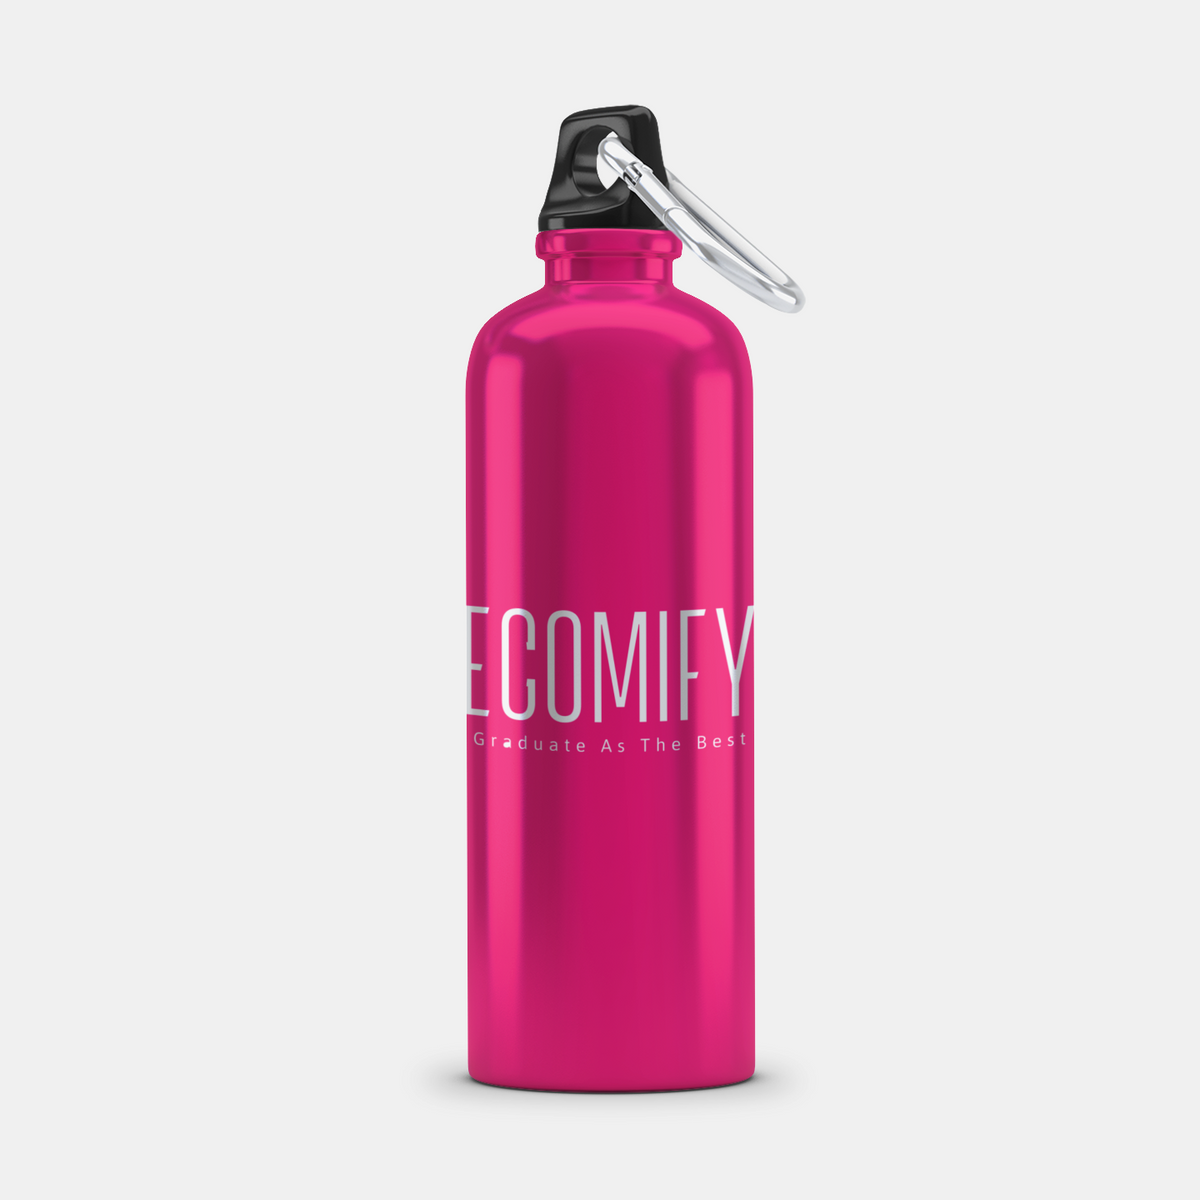 Ecomify™  Aluminum Bottle